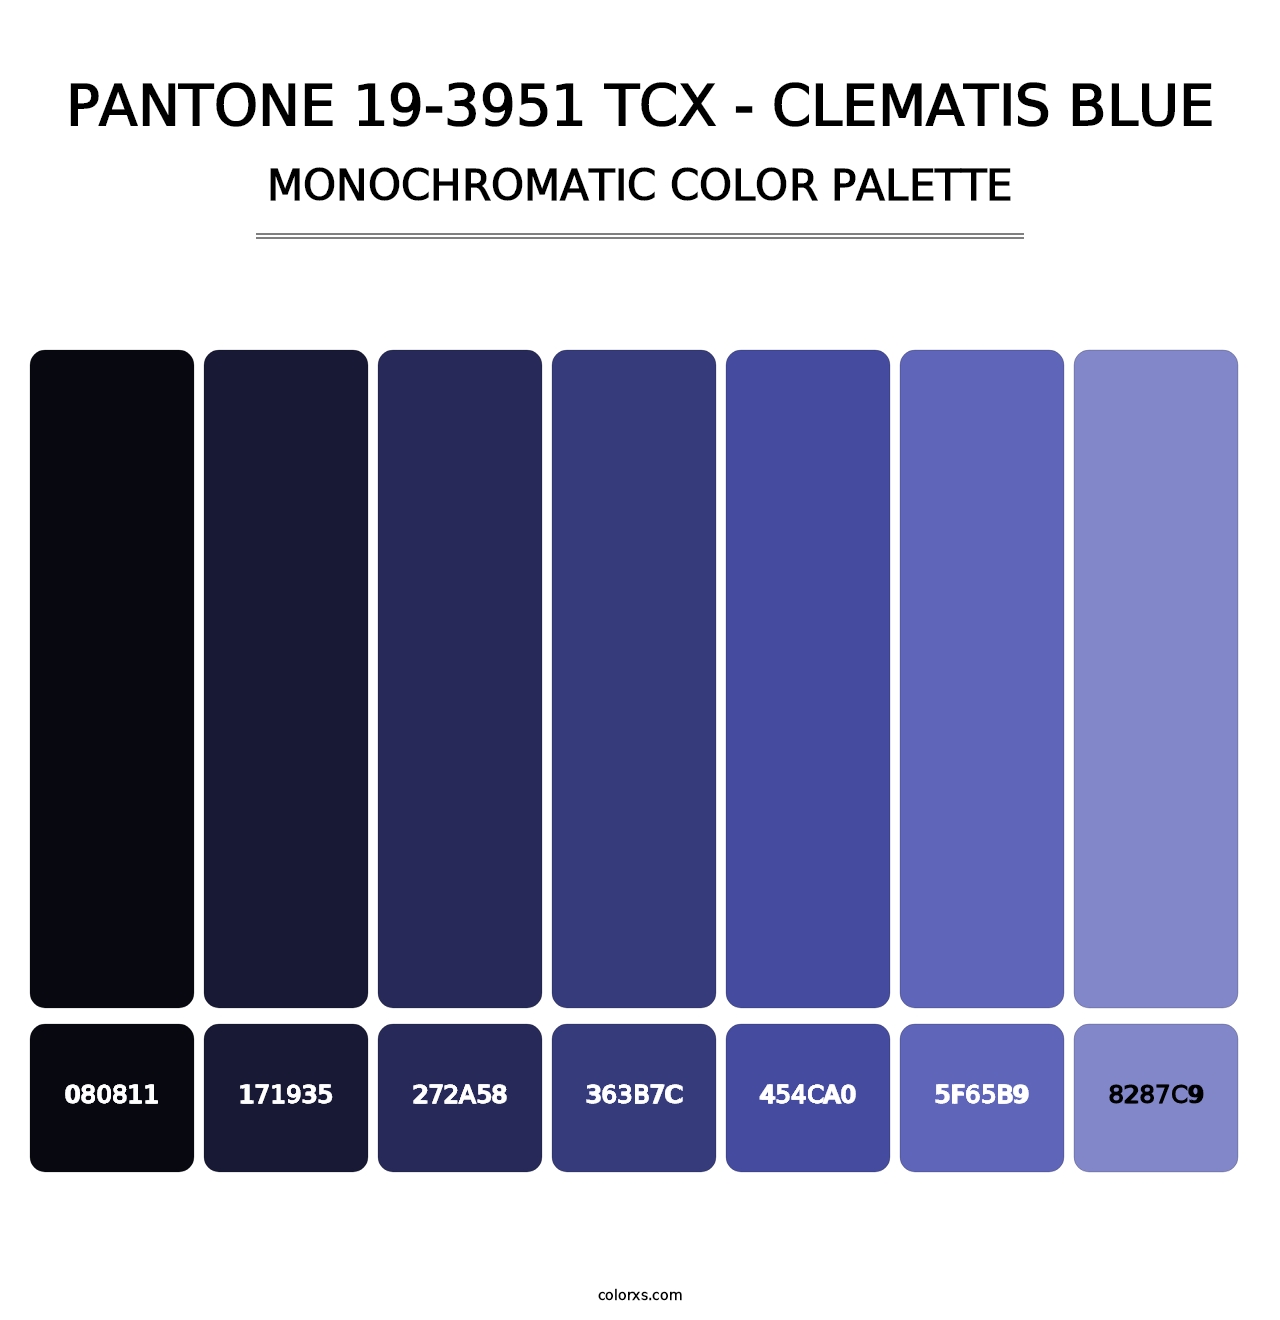 PANTONE 19-3951 TCX - Clematis Blue - Monochromatic Color Palette